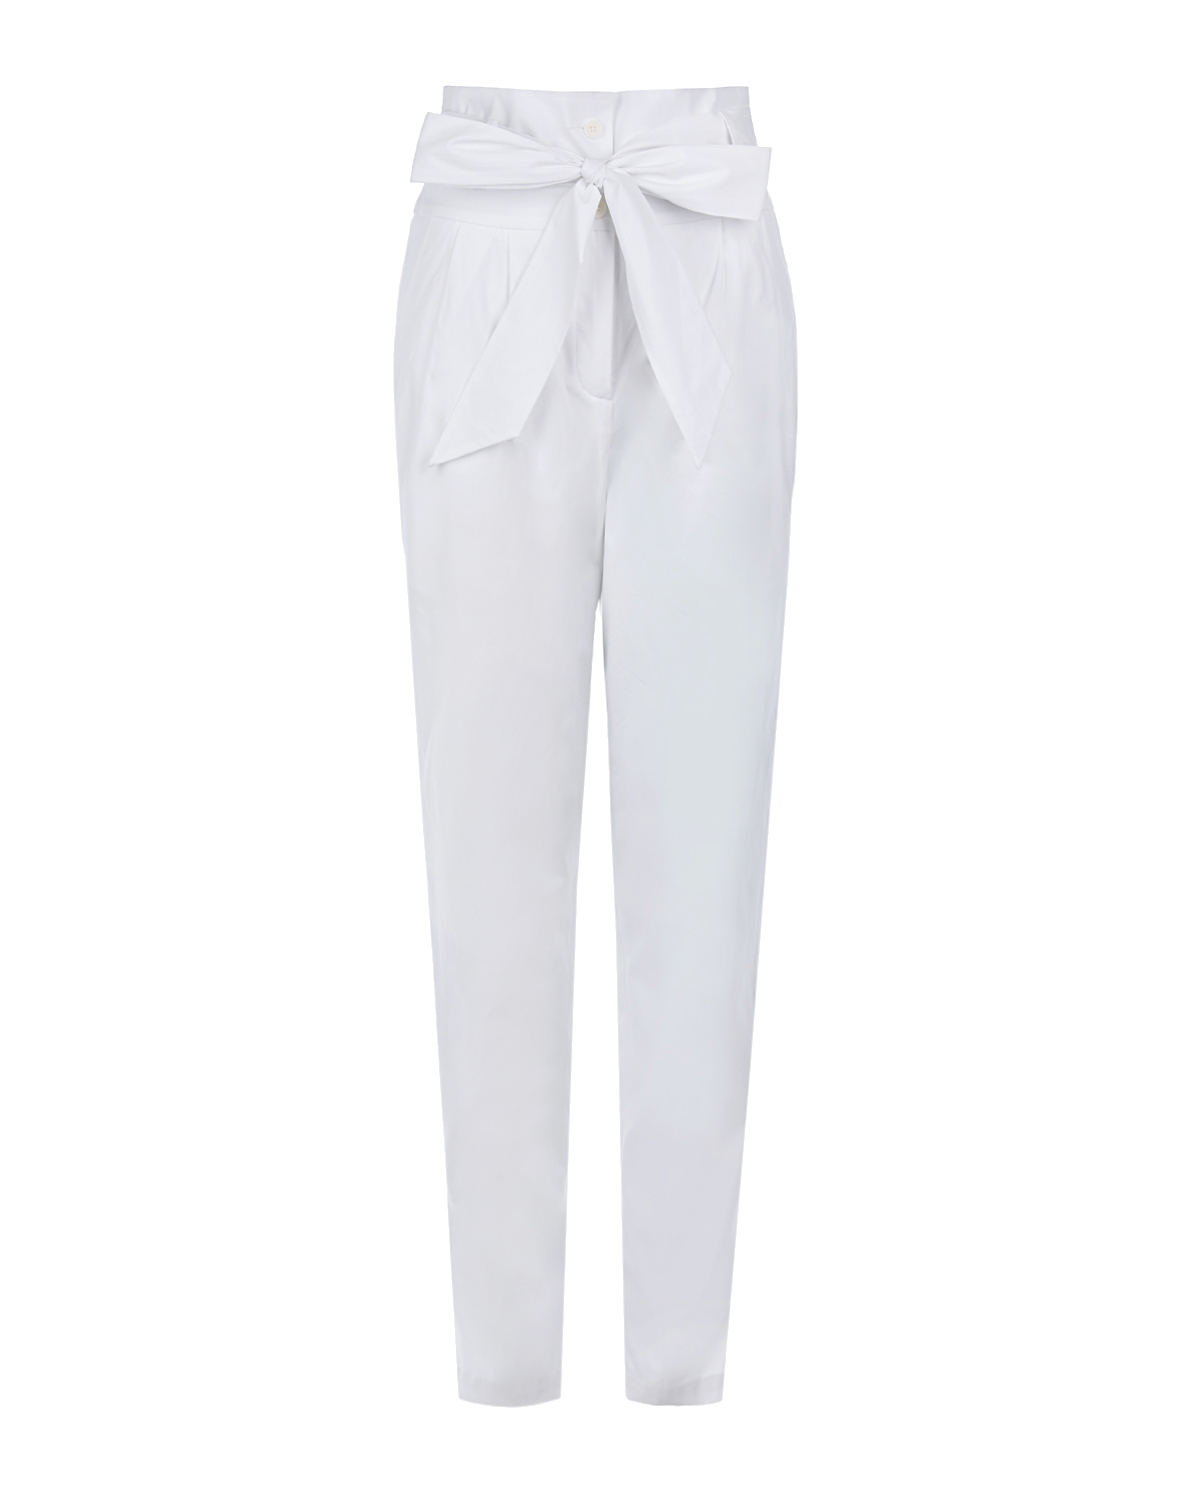 Белые брюки с поясом Sara Roka, размер 40, цвет белый - фото 1